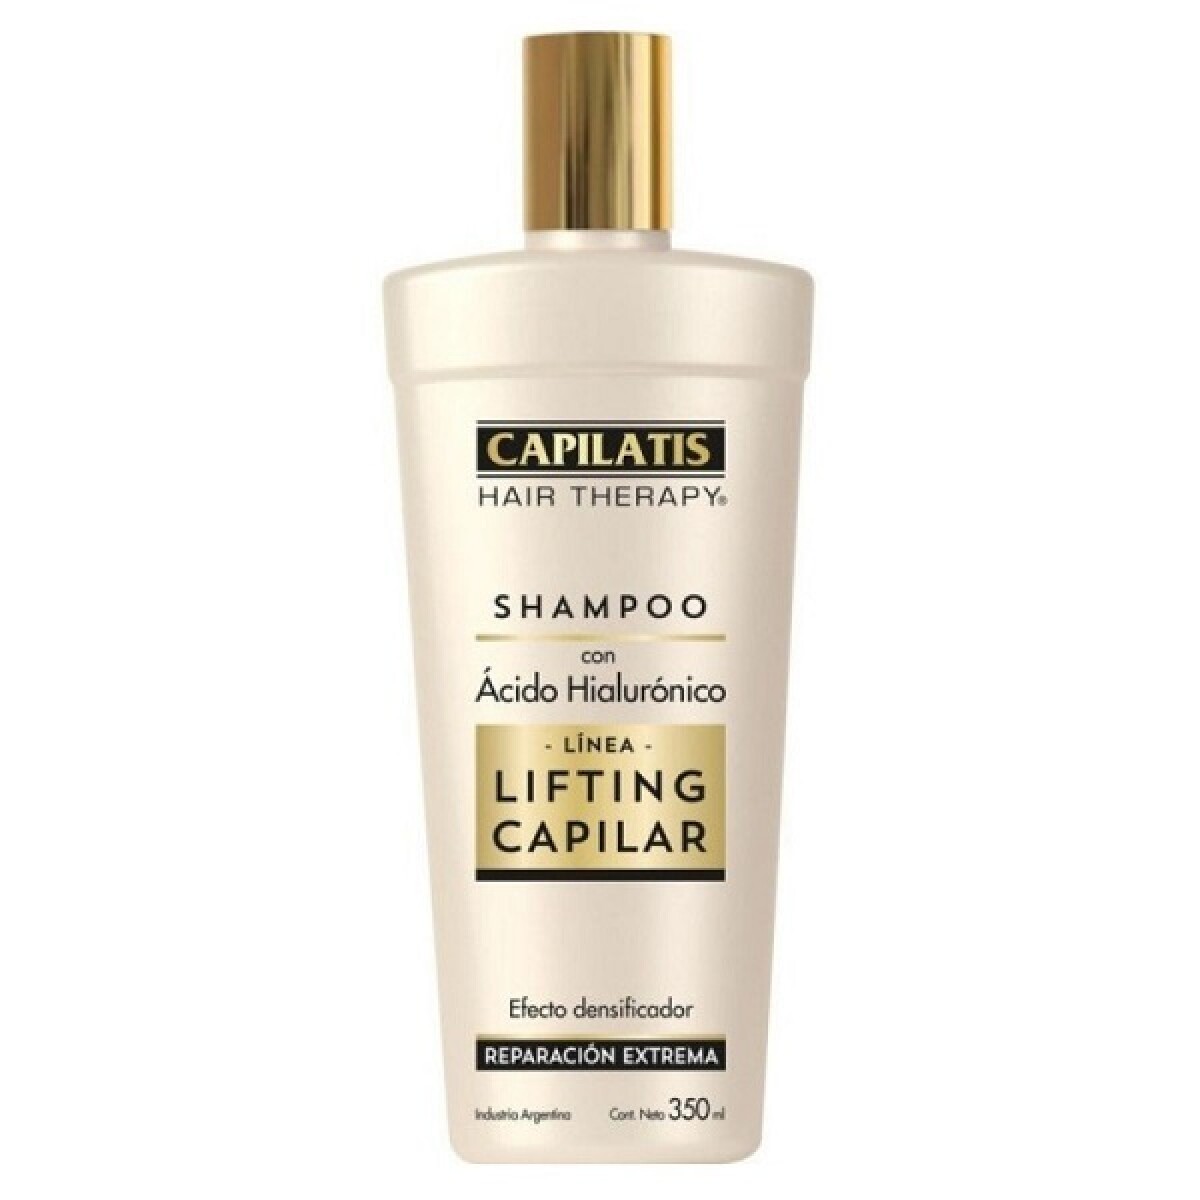 Shampoo Capilatis Lifting Capilar C/ ácido Hialurónico 350ml 